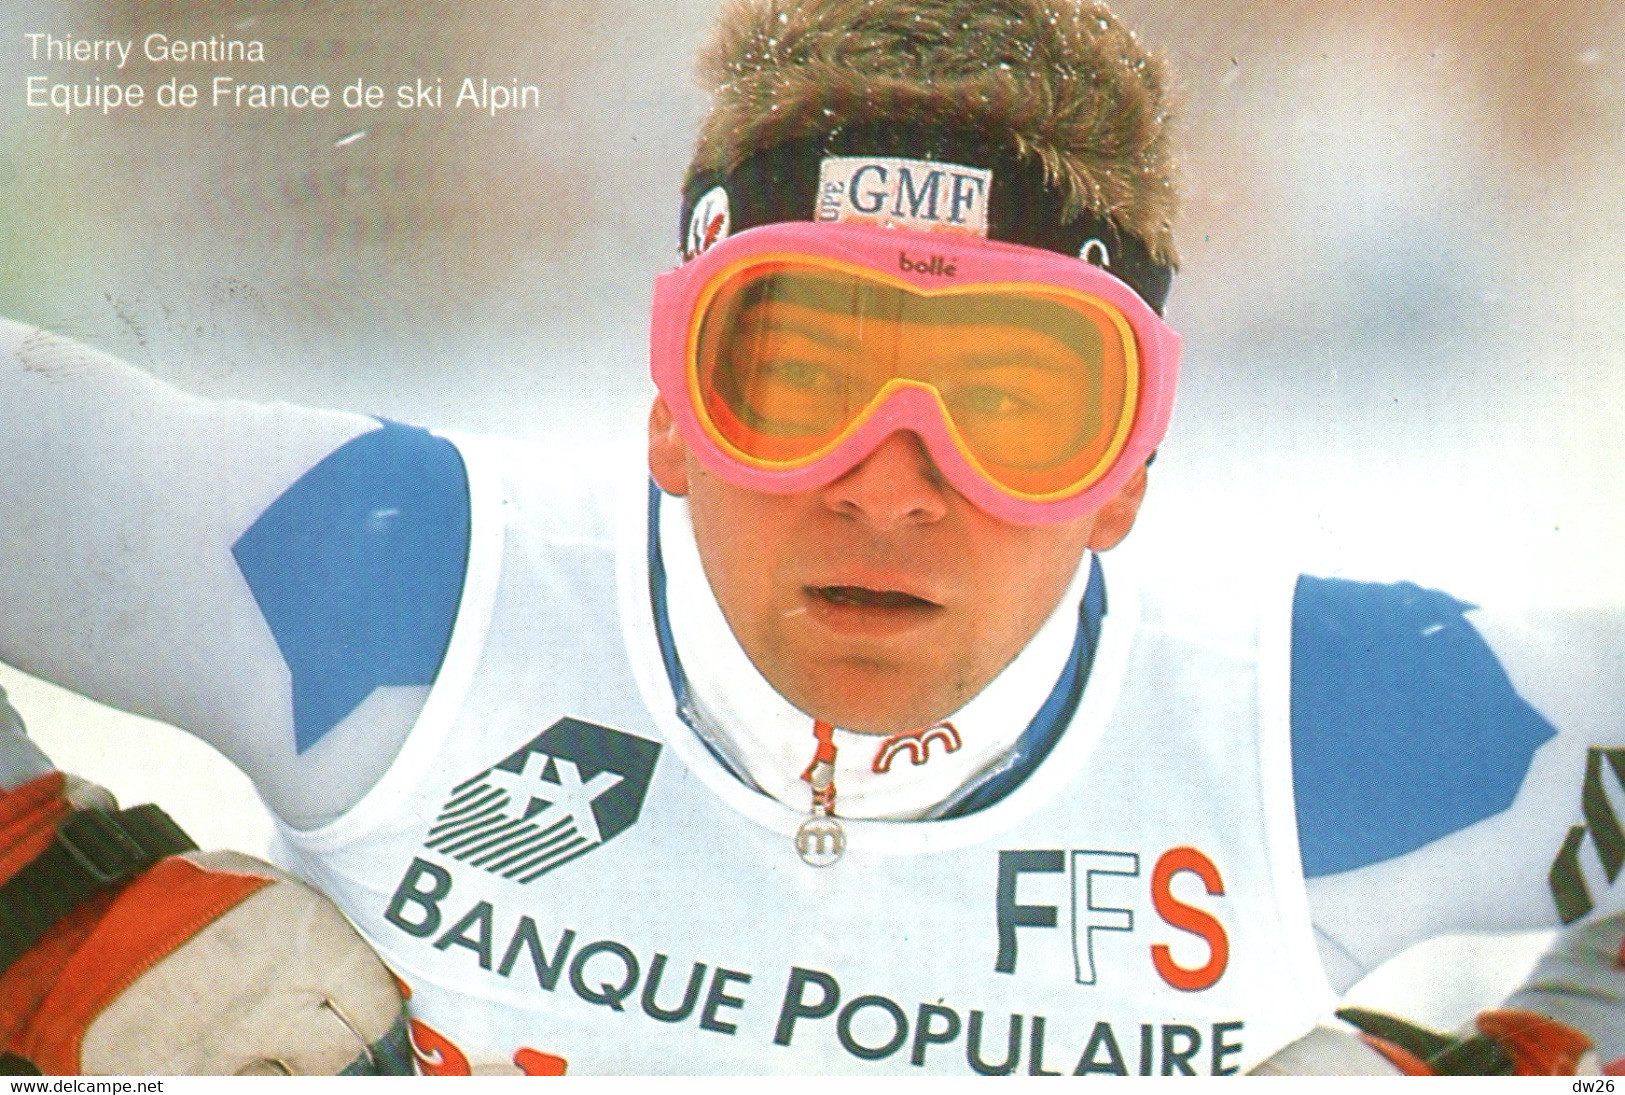 Thierry Gentina - Equipe De France De Ski Alpin (Descente) - Publicité Banque Populaire 1992 - Kampfsport